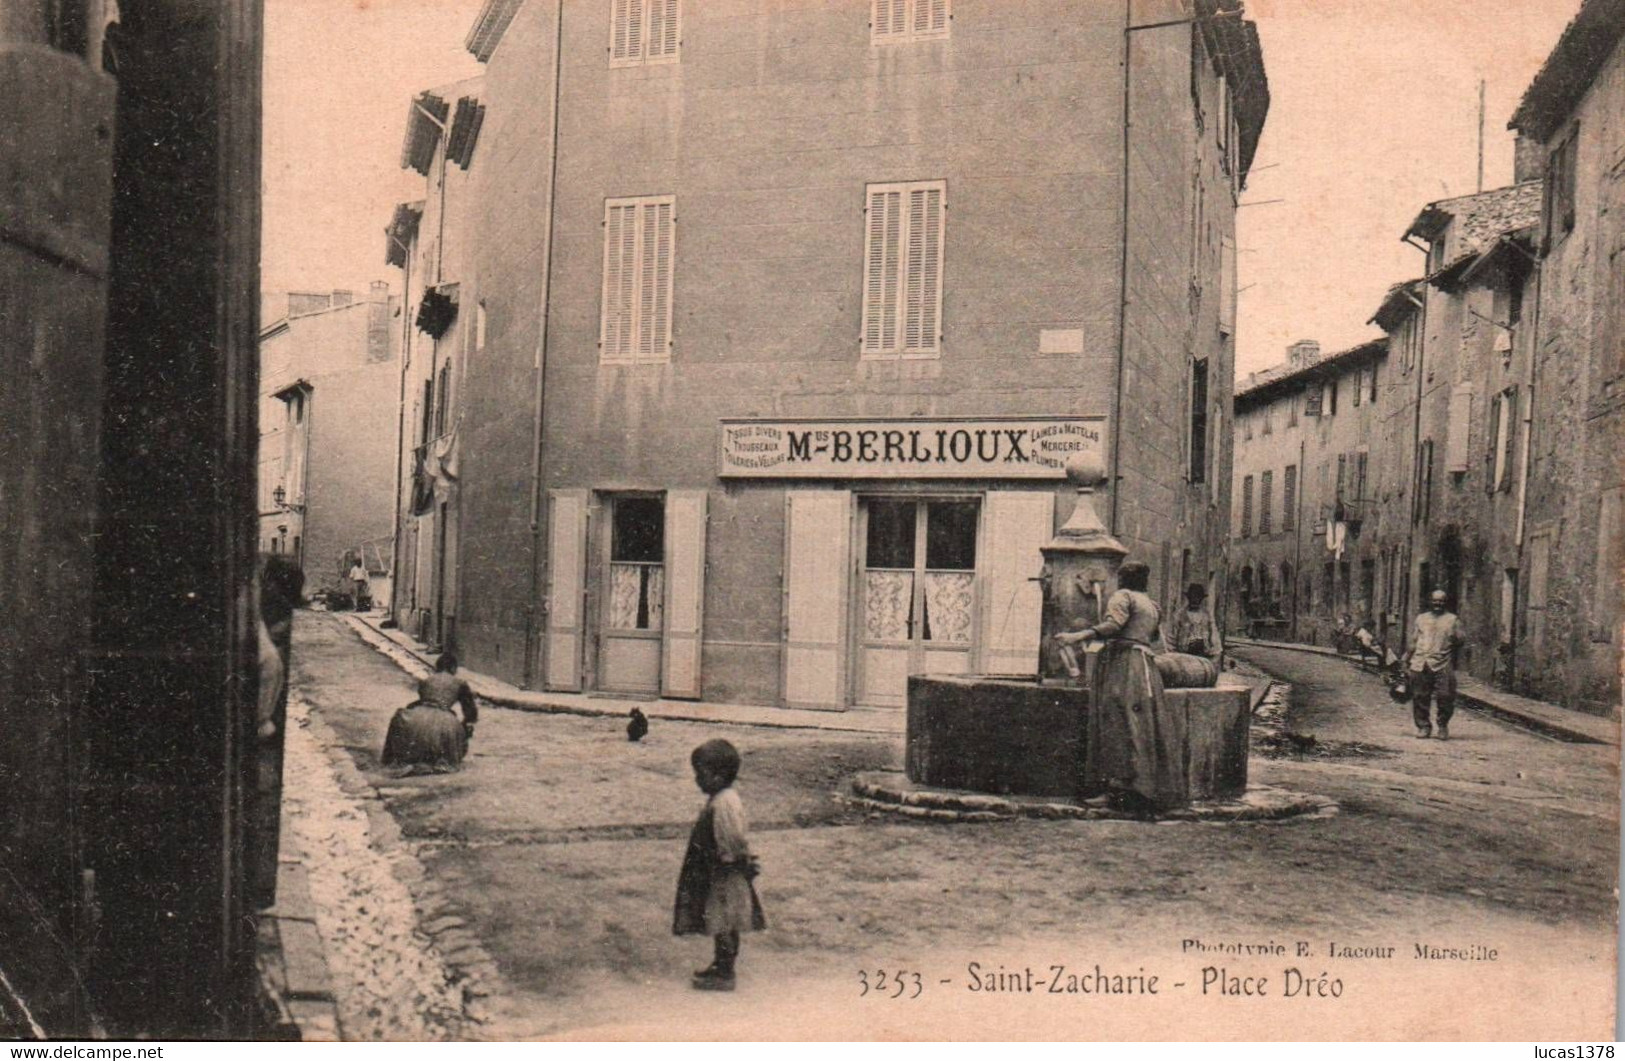 83 / SAINT-ZACHARIE - Place Dréo / LACOUR 3253 - Saint-Zacharie